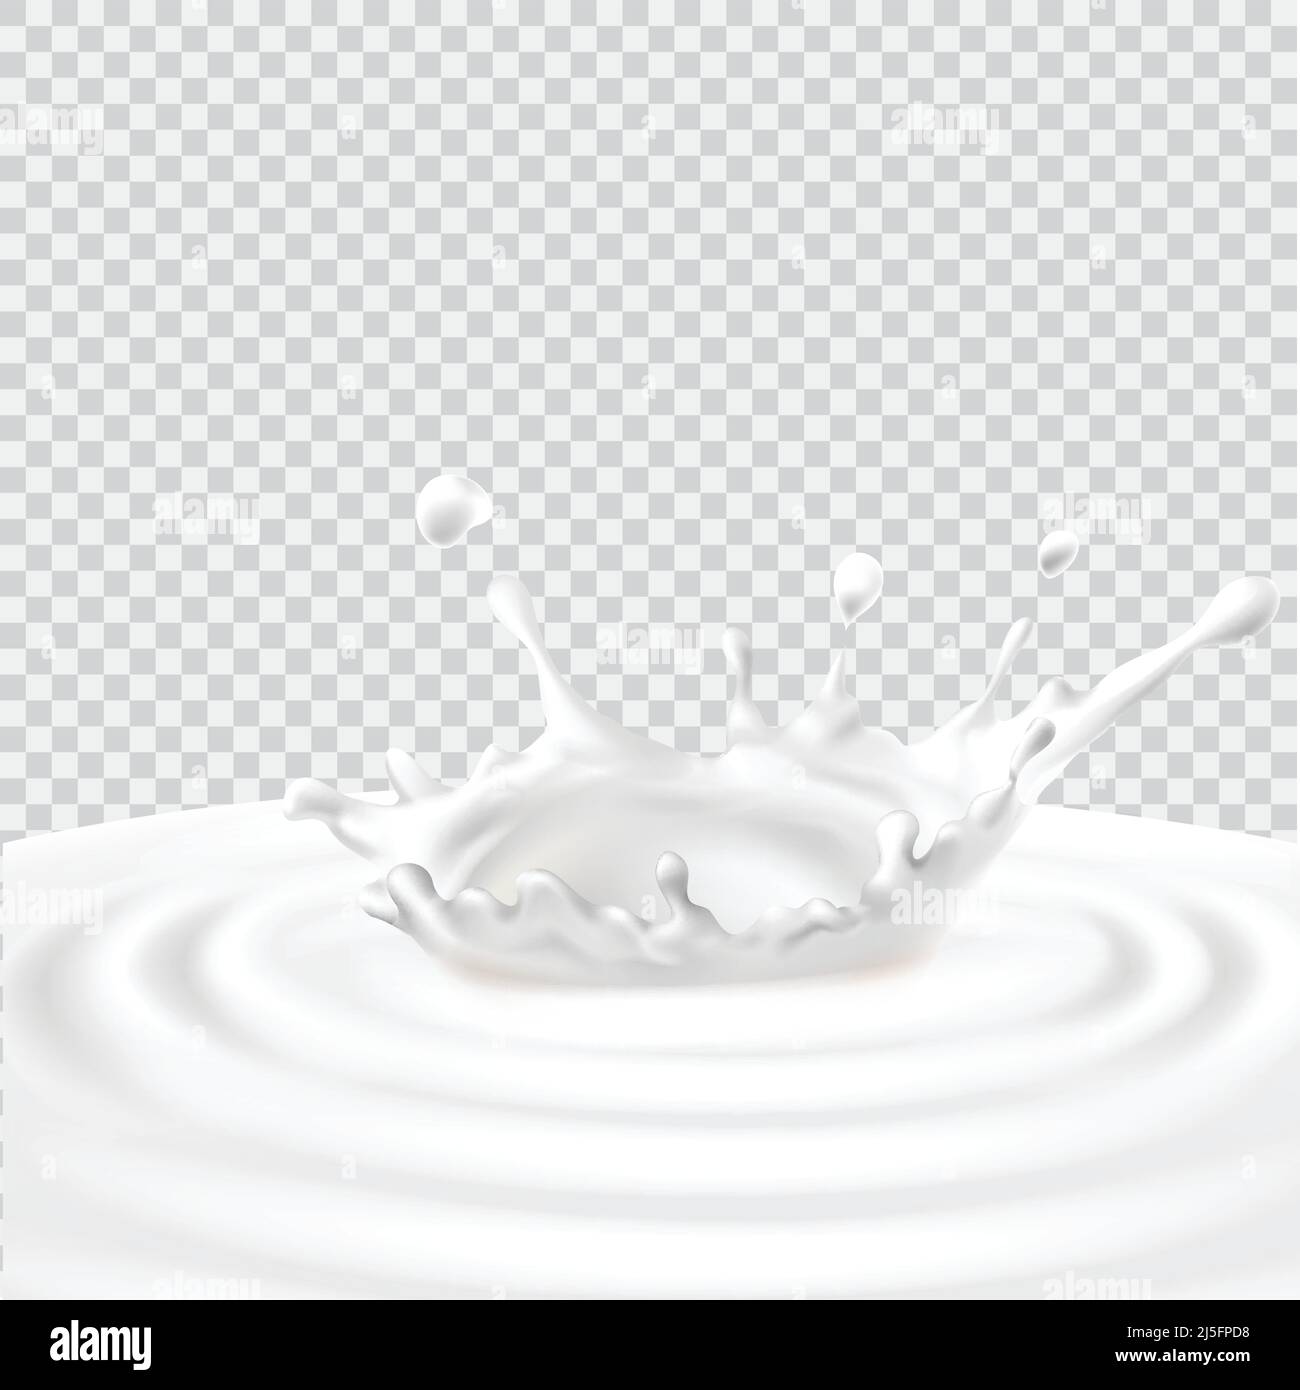 Illustrazione vettoriale di un schizzi di latte. Poster pubblicitario modello in uno stile realistico per latte naturale di alta qualità Illustrazione Vettoriale